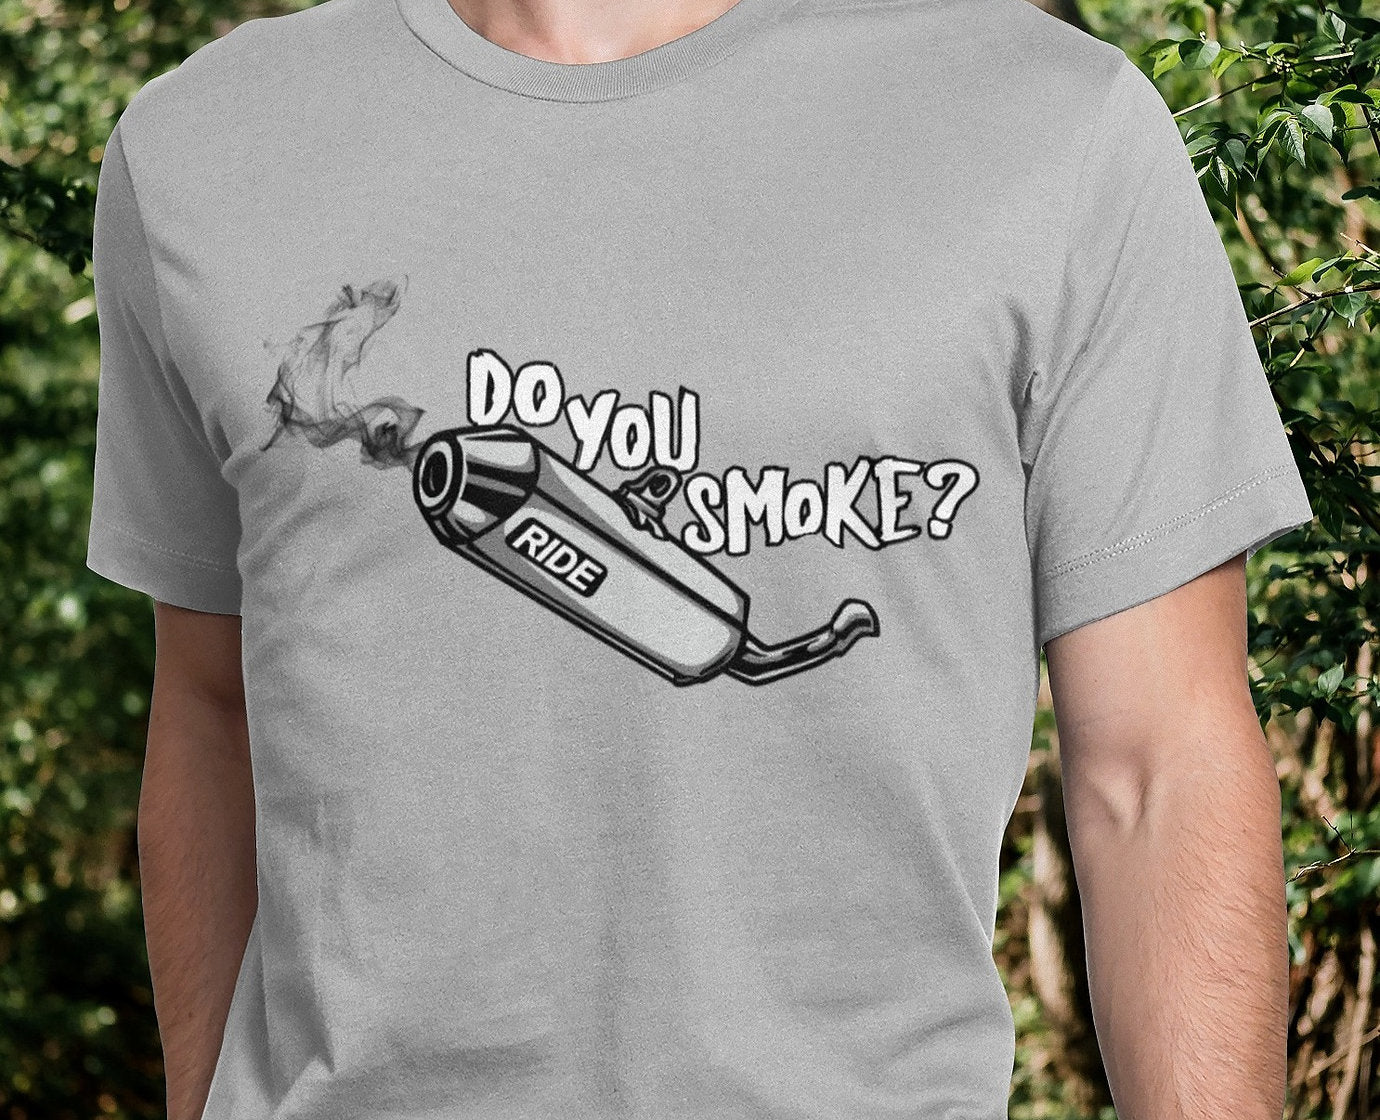 T-SHIRT DO YOU SMOKE?